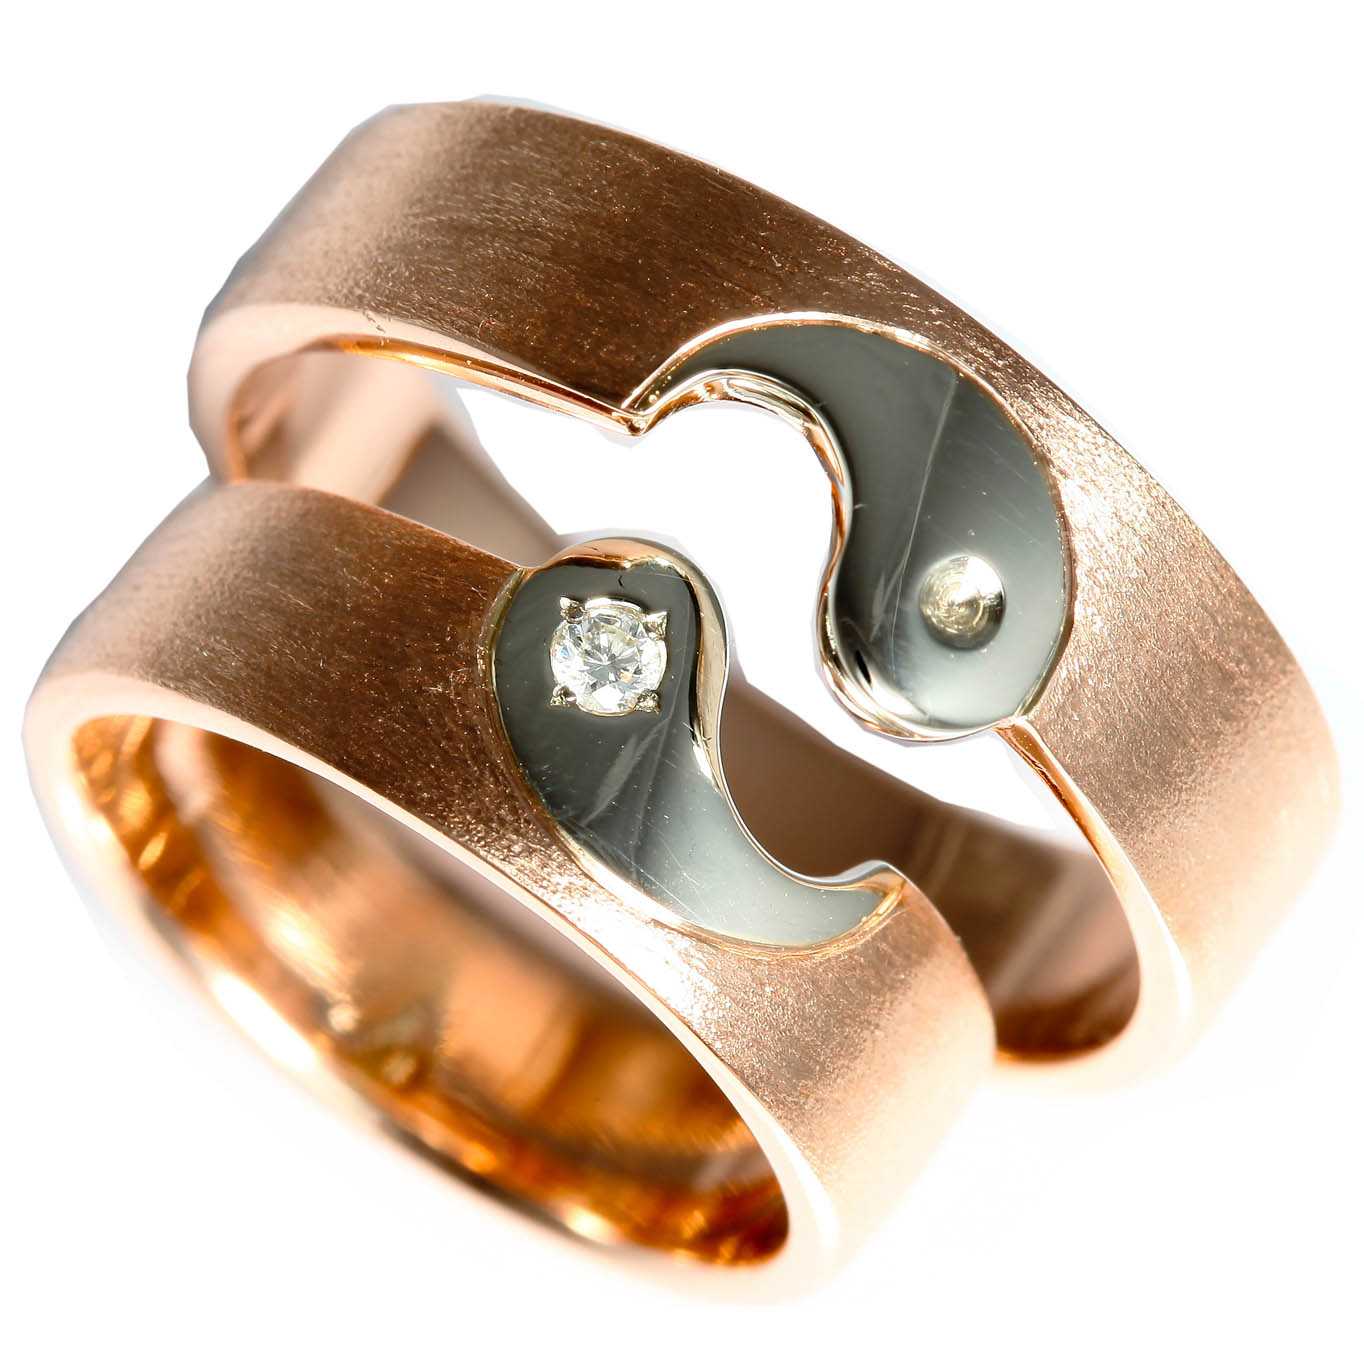 Jakcom smart ring r3 — умное кольцо, которое не нужно заряжать. никогда!